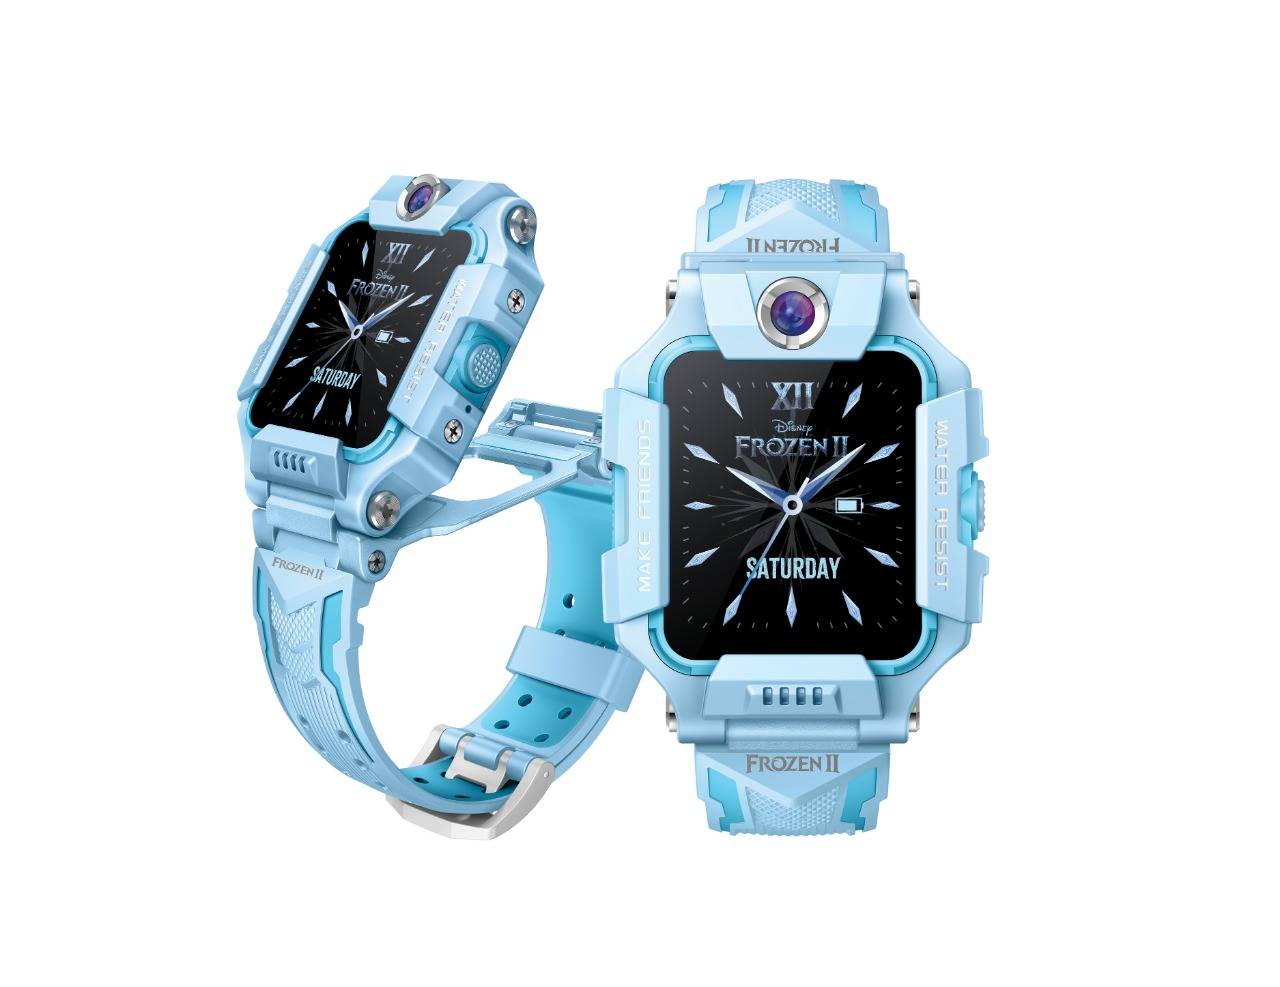 Imoo punya watch phone Z6 koleksi spesial Frozen 2!